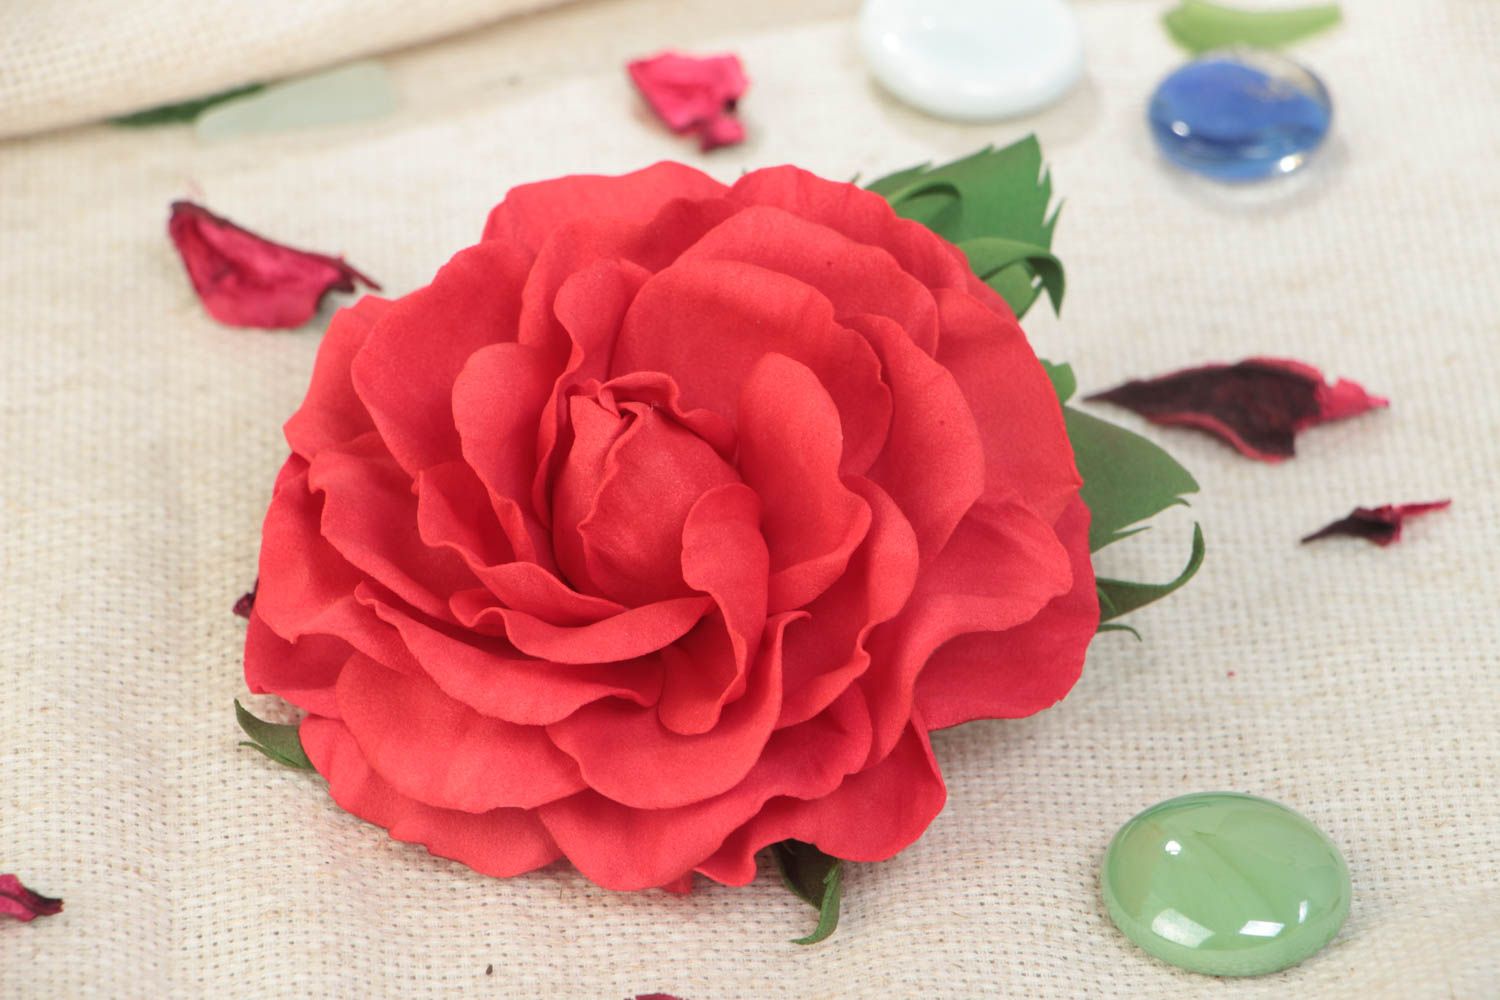 Красная брошь в виде цветка из фоамирана ручной работы крупная красивая фото 1